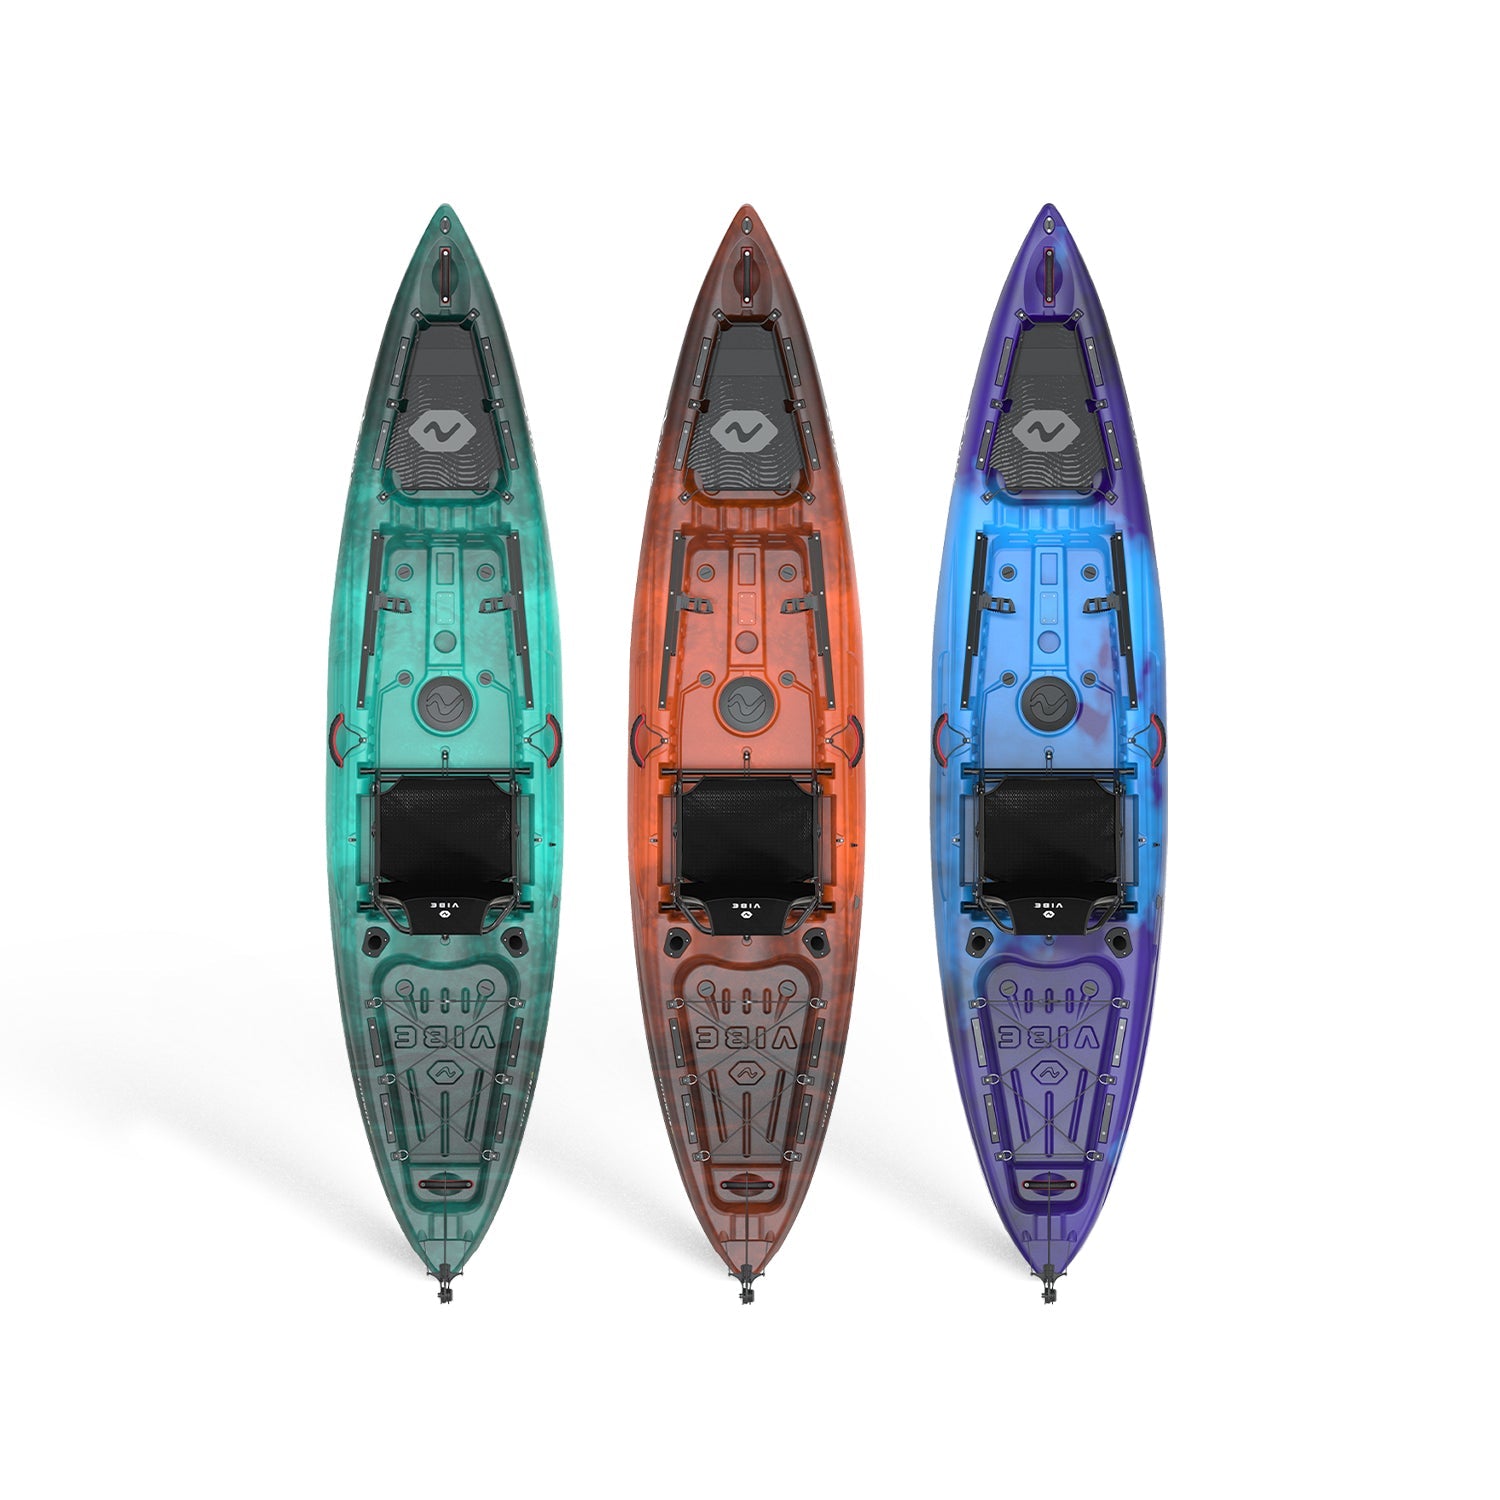 Yellowfin 120 Kayak in 3 colors